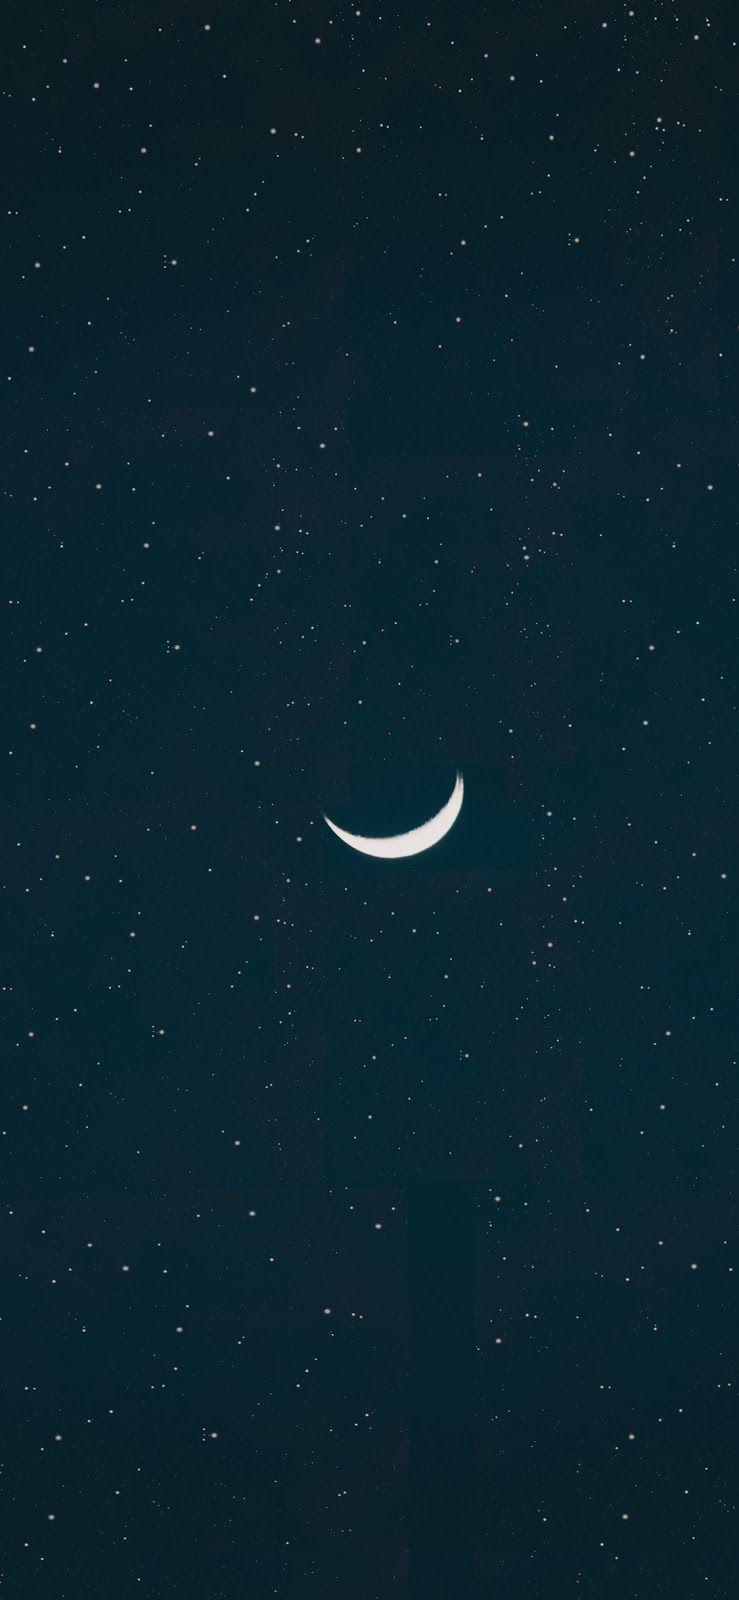 crescent moon wallpaper iphone x. Android wallpaper black